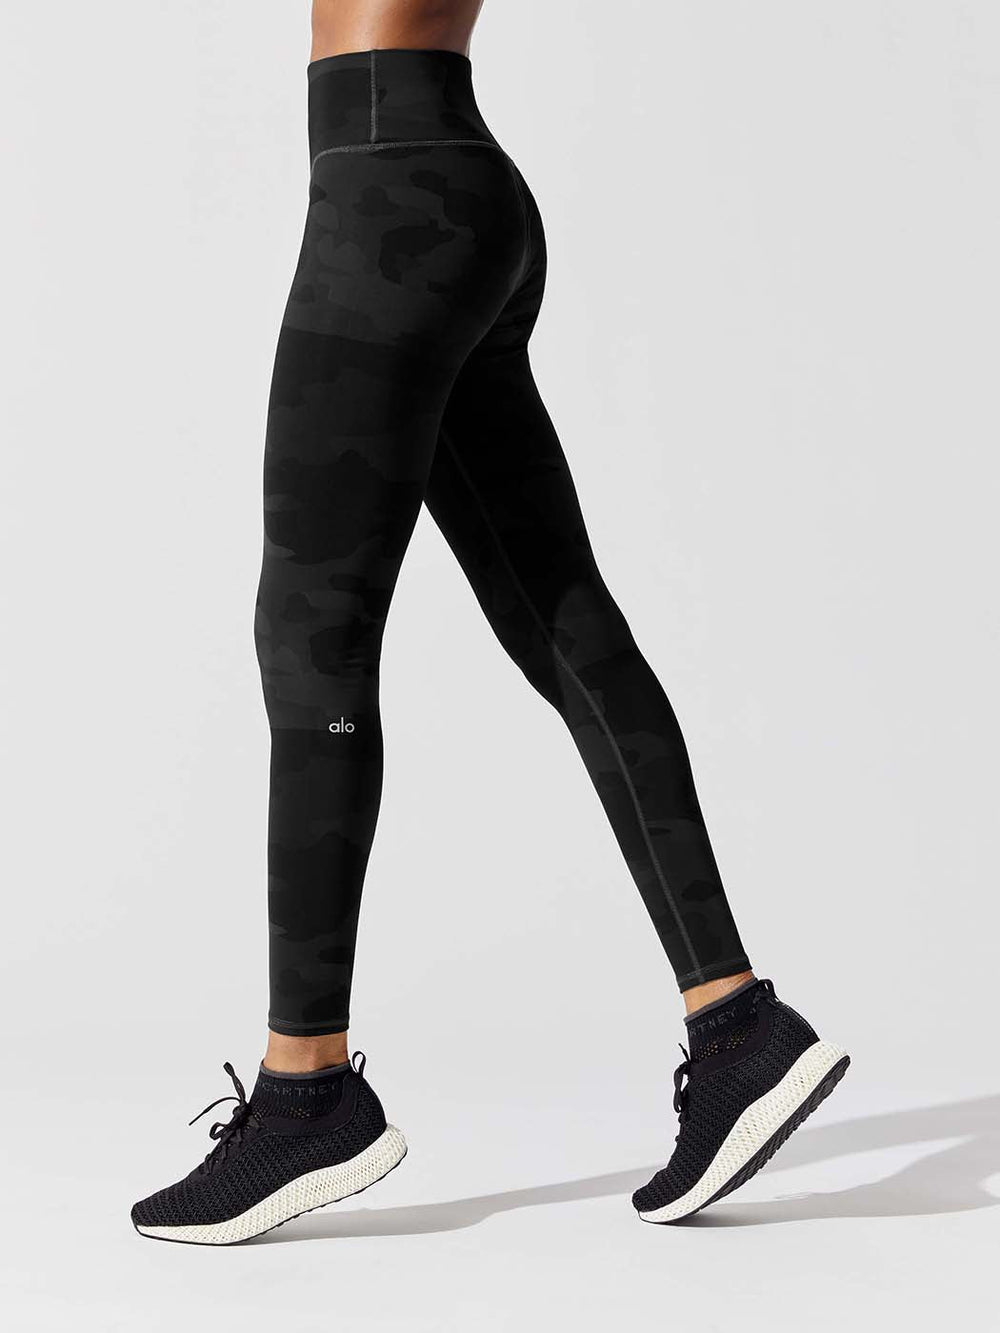 ALO Yoga, Pants & Jumpsuits, New Alo Yoga Black Leggings Size Small